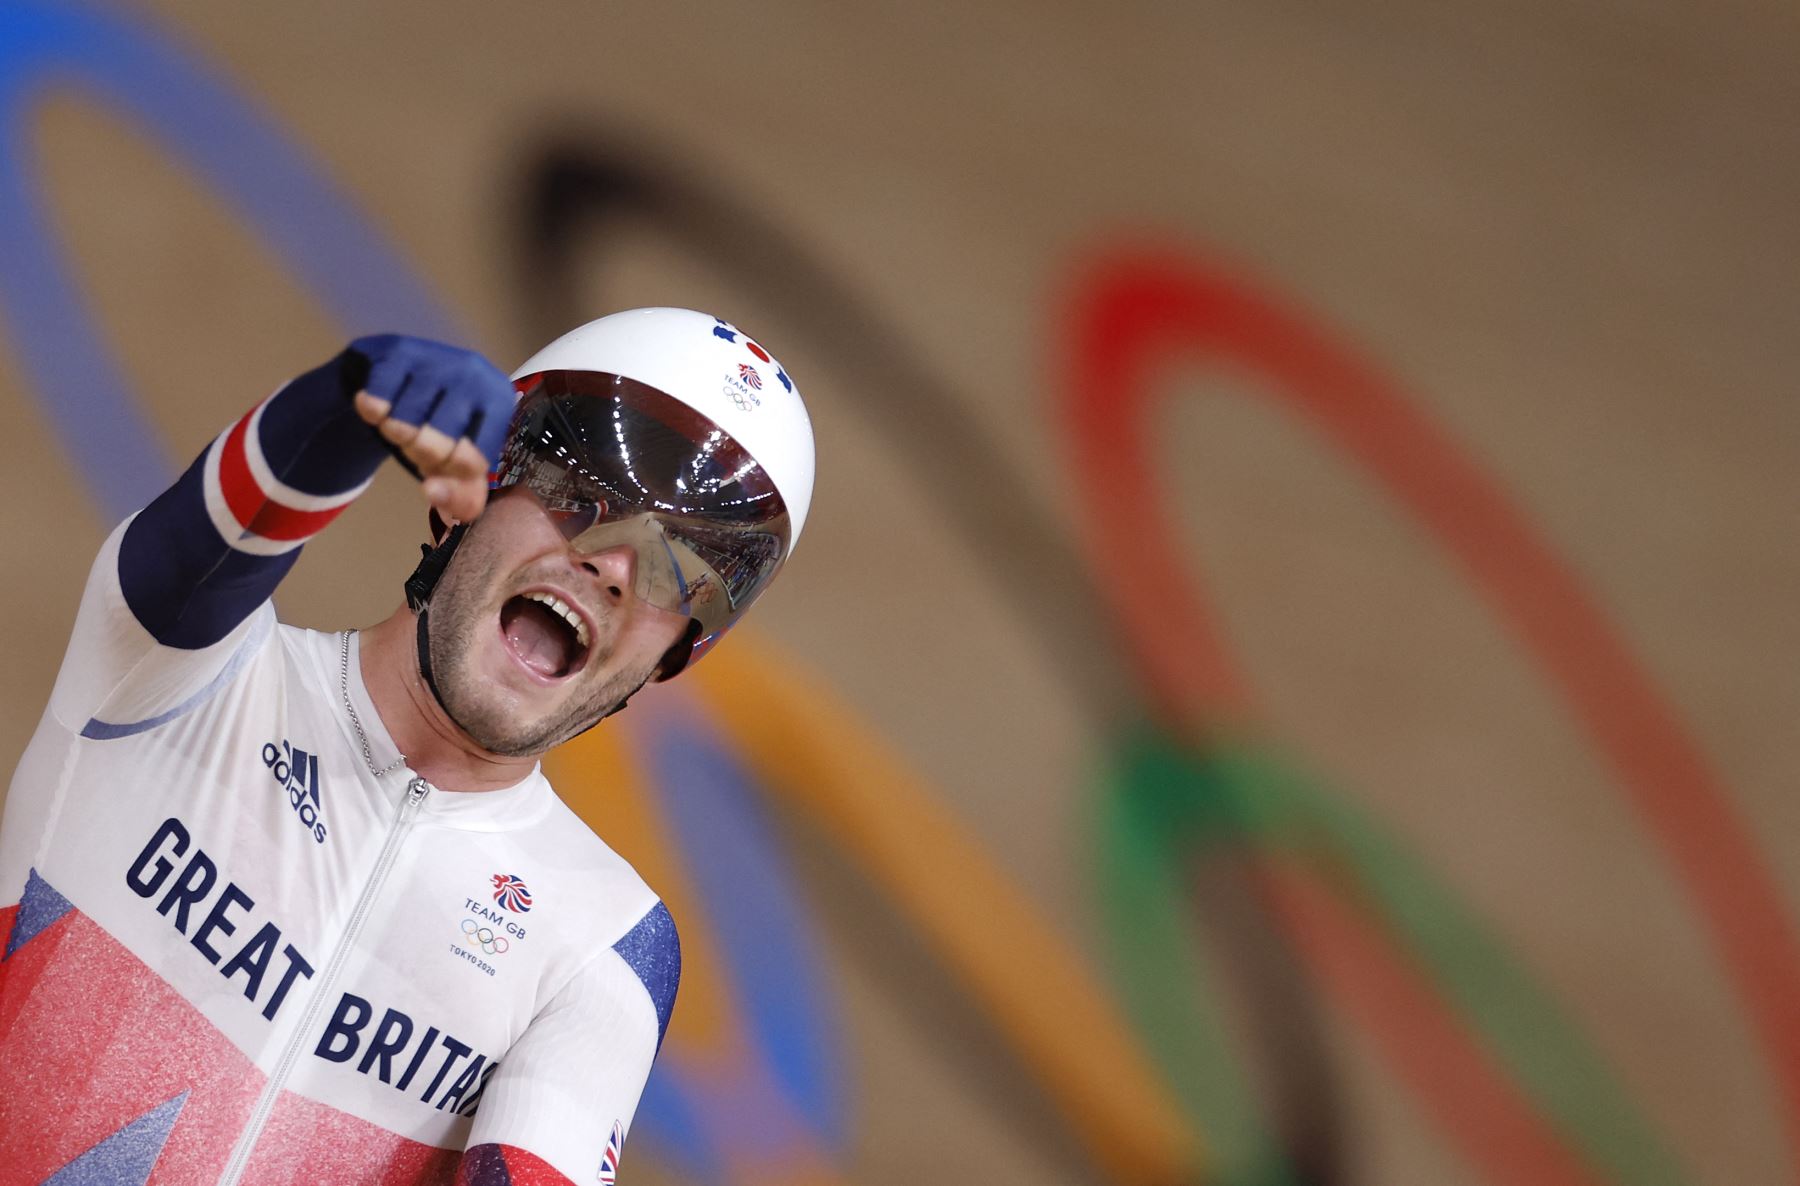 El británico Matthew Walls celebra después de ganar la carrera de puntos omnium de ciclismo en pista masculino durante los Juegos Olímpicos de Tokio 2020.Foto:AFP